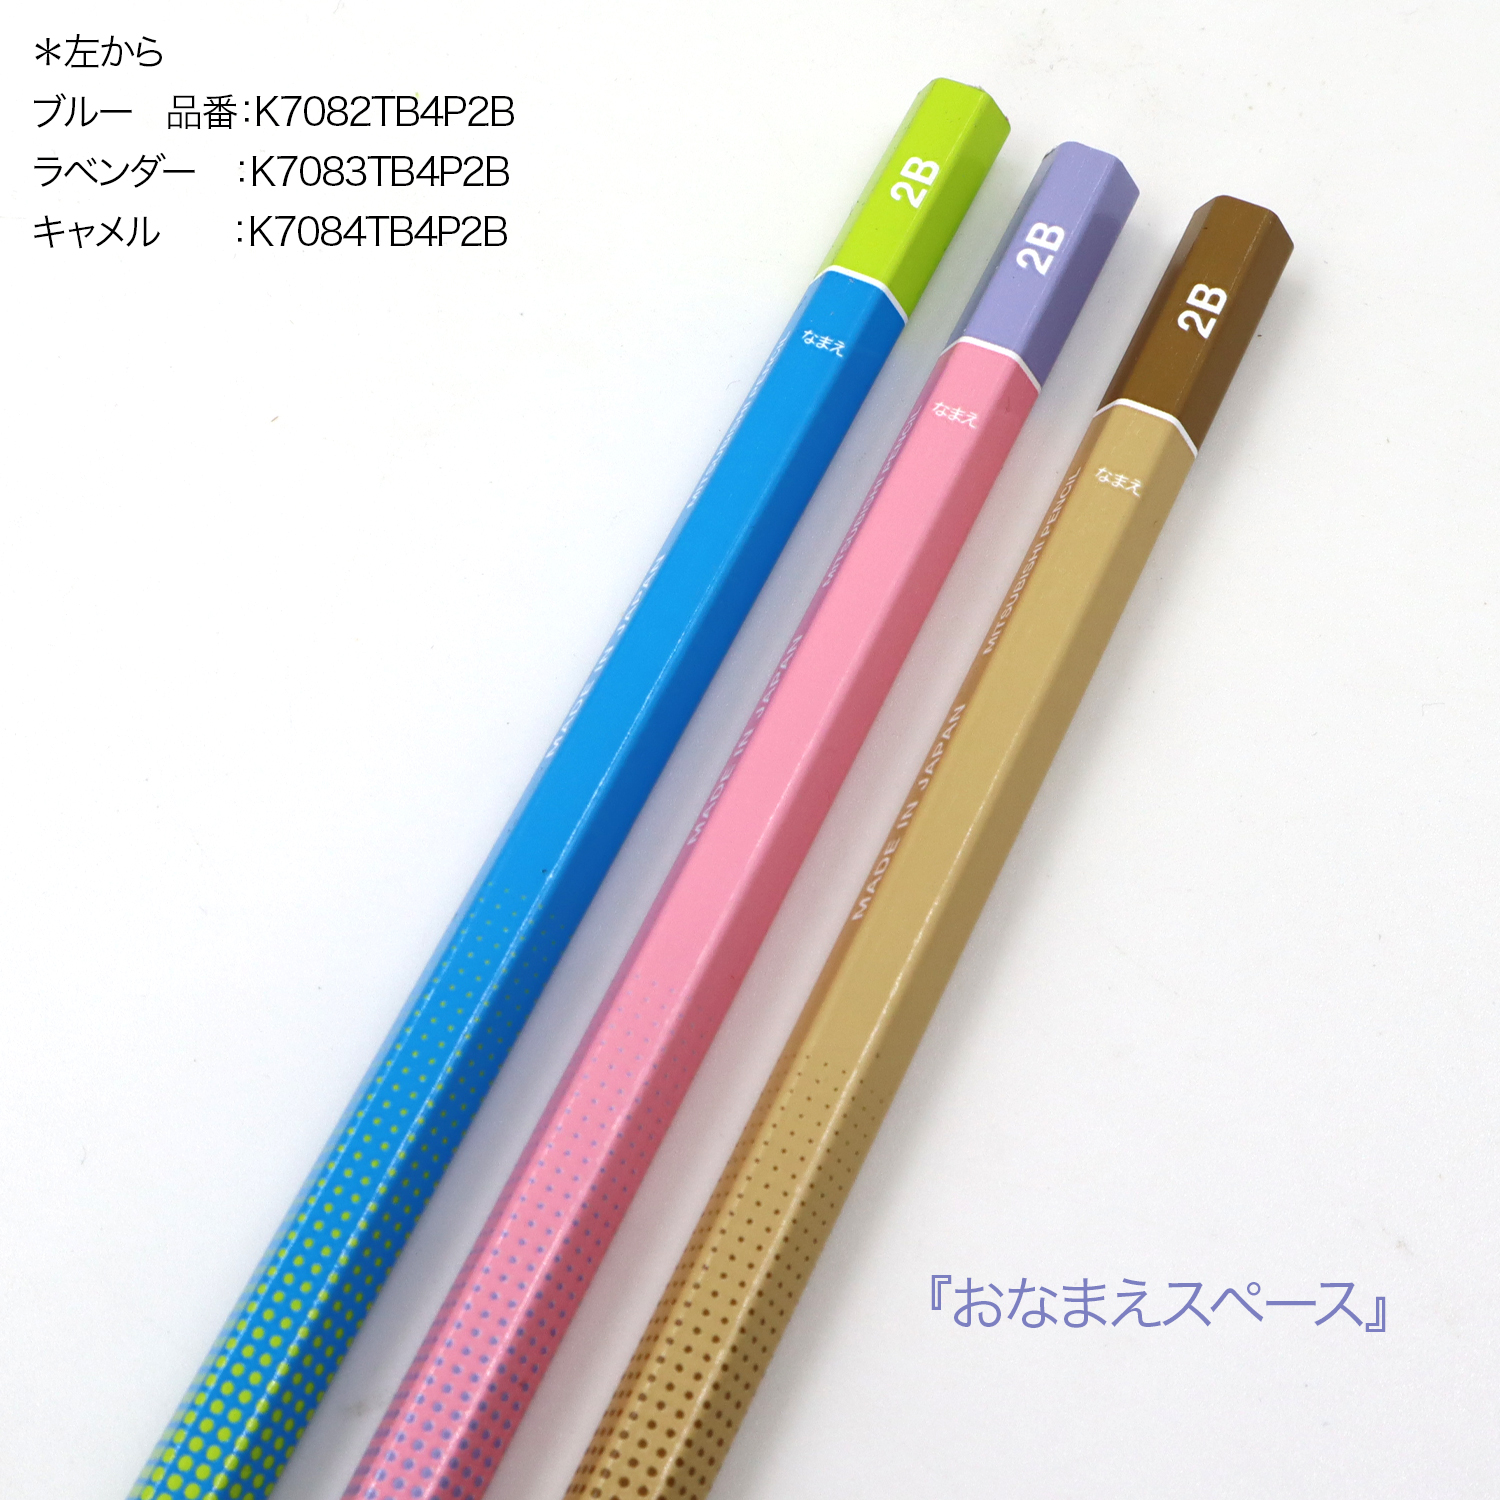 三菱鉛筆 uni タブレット授業えんぴつ かきかた鉛筆 2B 4P(4本入) 6角 K7083TB4P2B 2B・ラベンダー